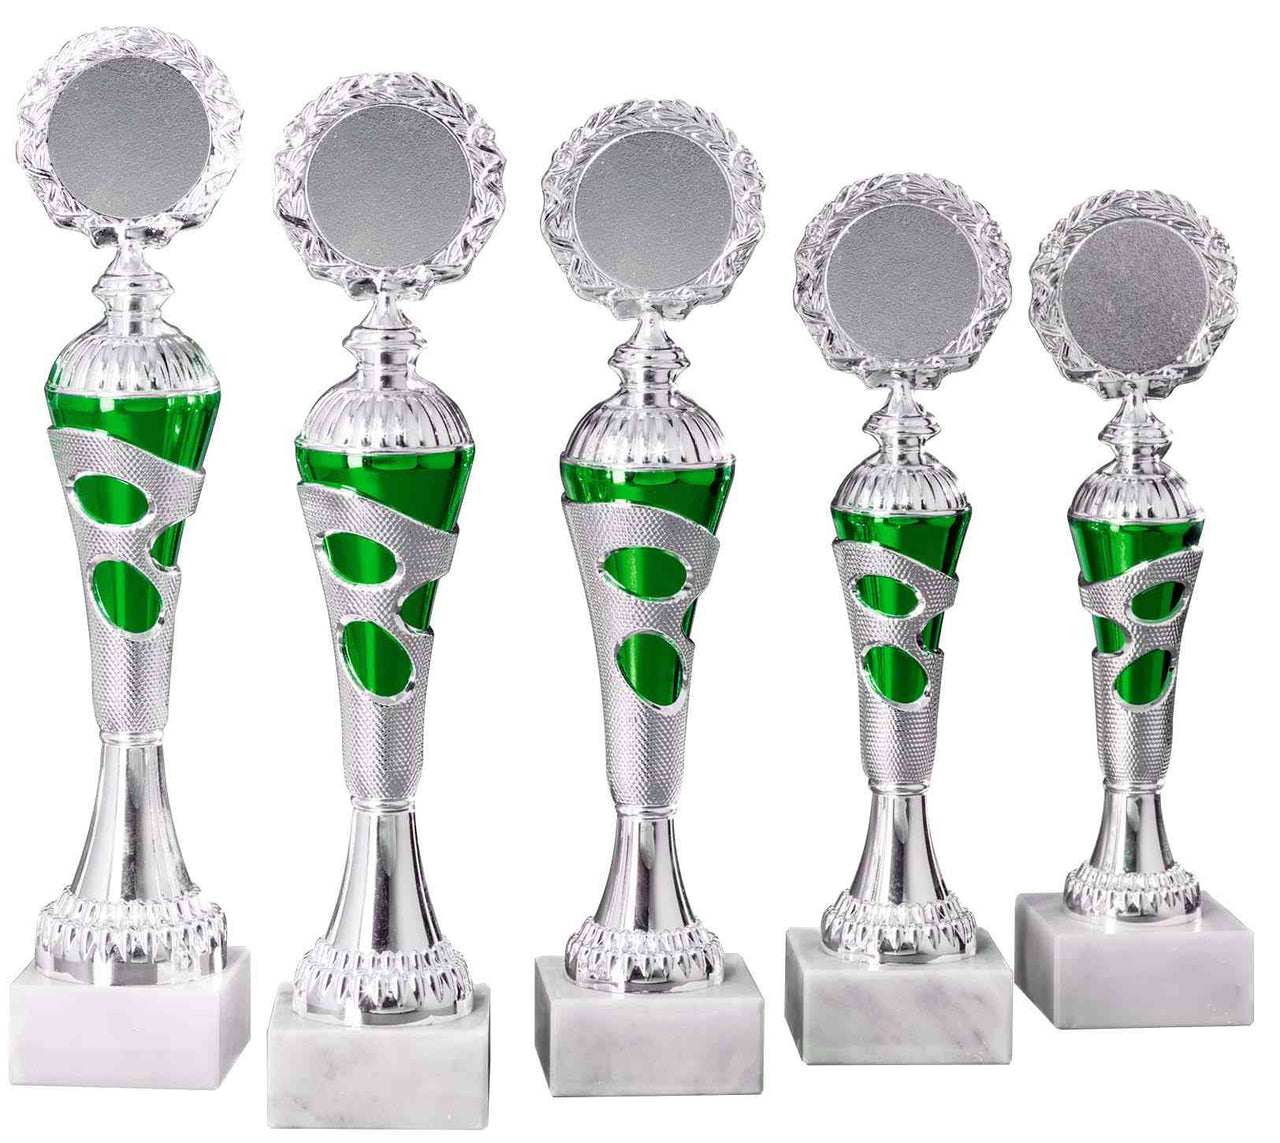 Ein Satz von fünf silbernen und grünen POMEKI Pokale Rastatt 5-er Pokalserie 255 mm - 308 mm PK754710-5-E50 unterschiedlicher Höhe, in absteigender Reihenfolge von links nach rechts angeordnet.